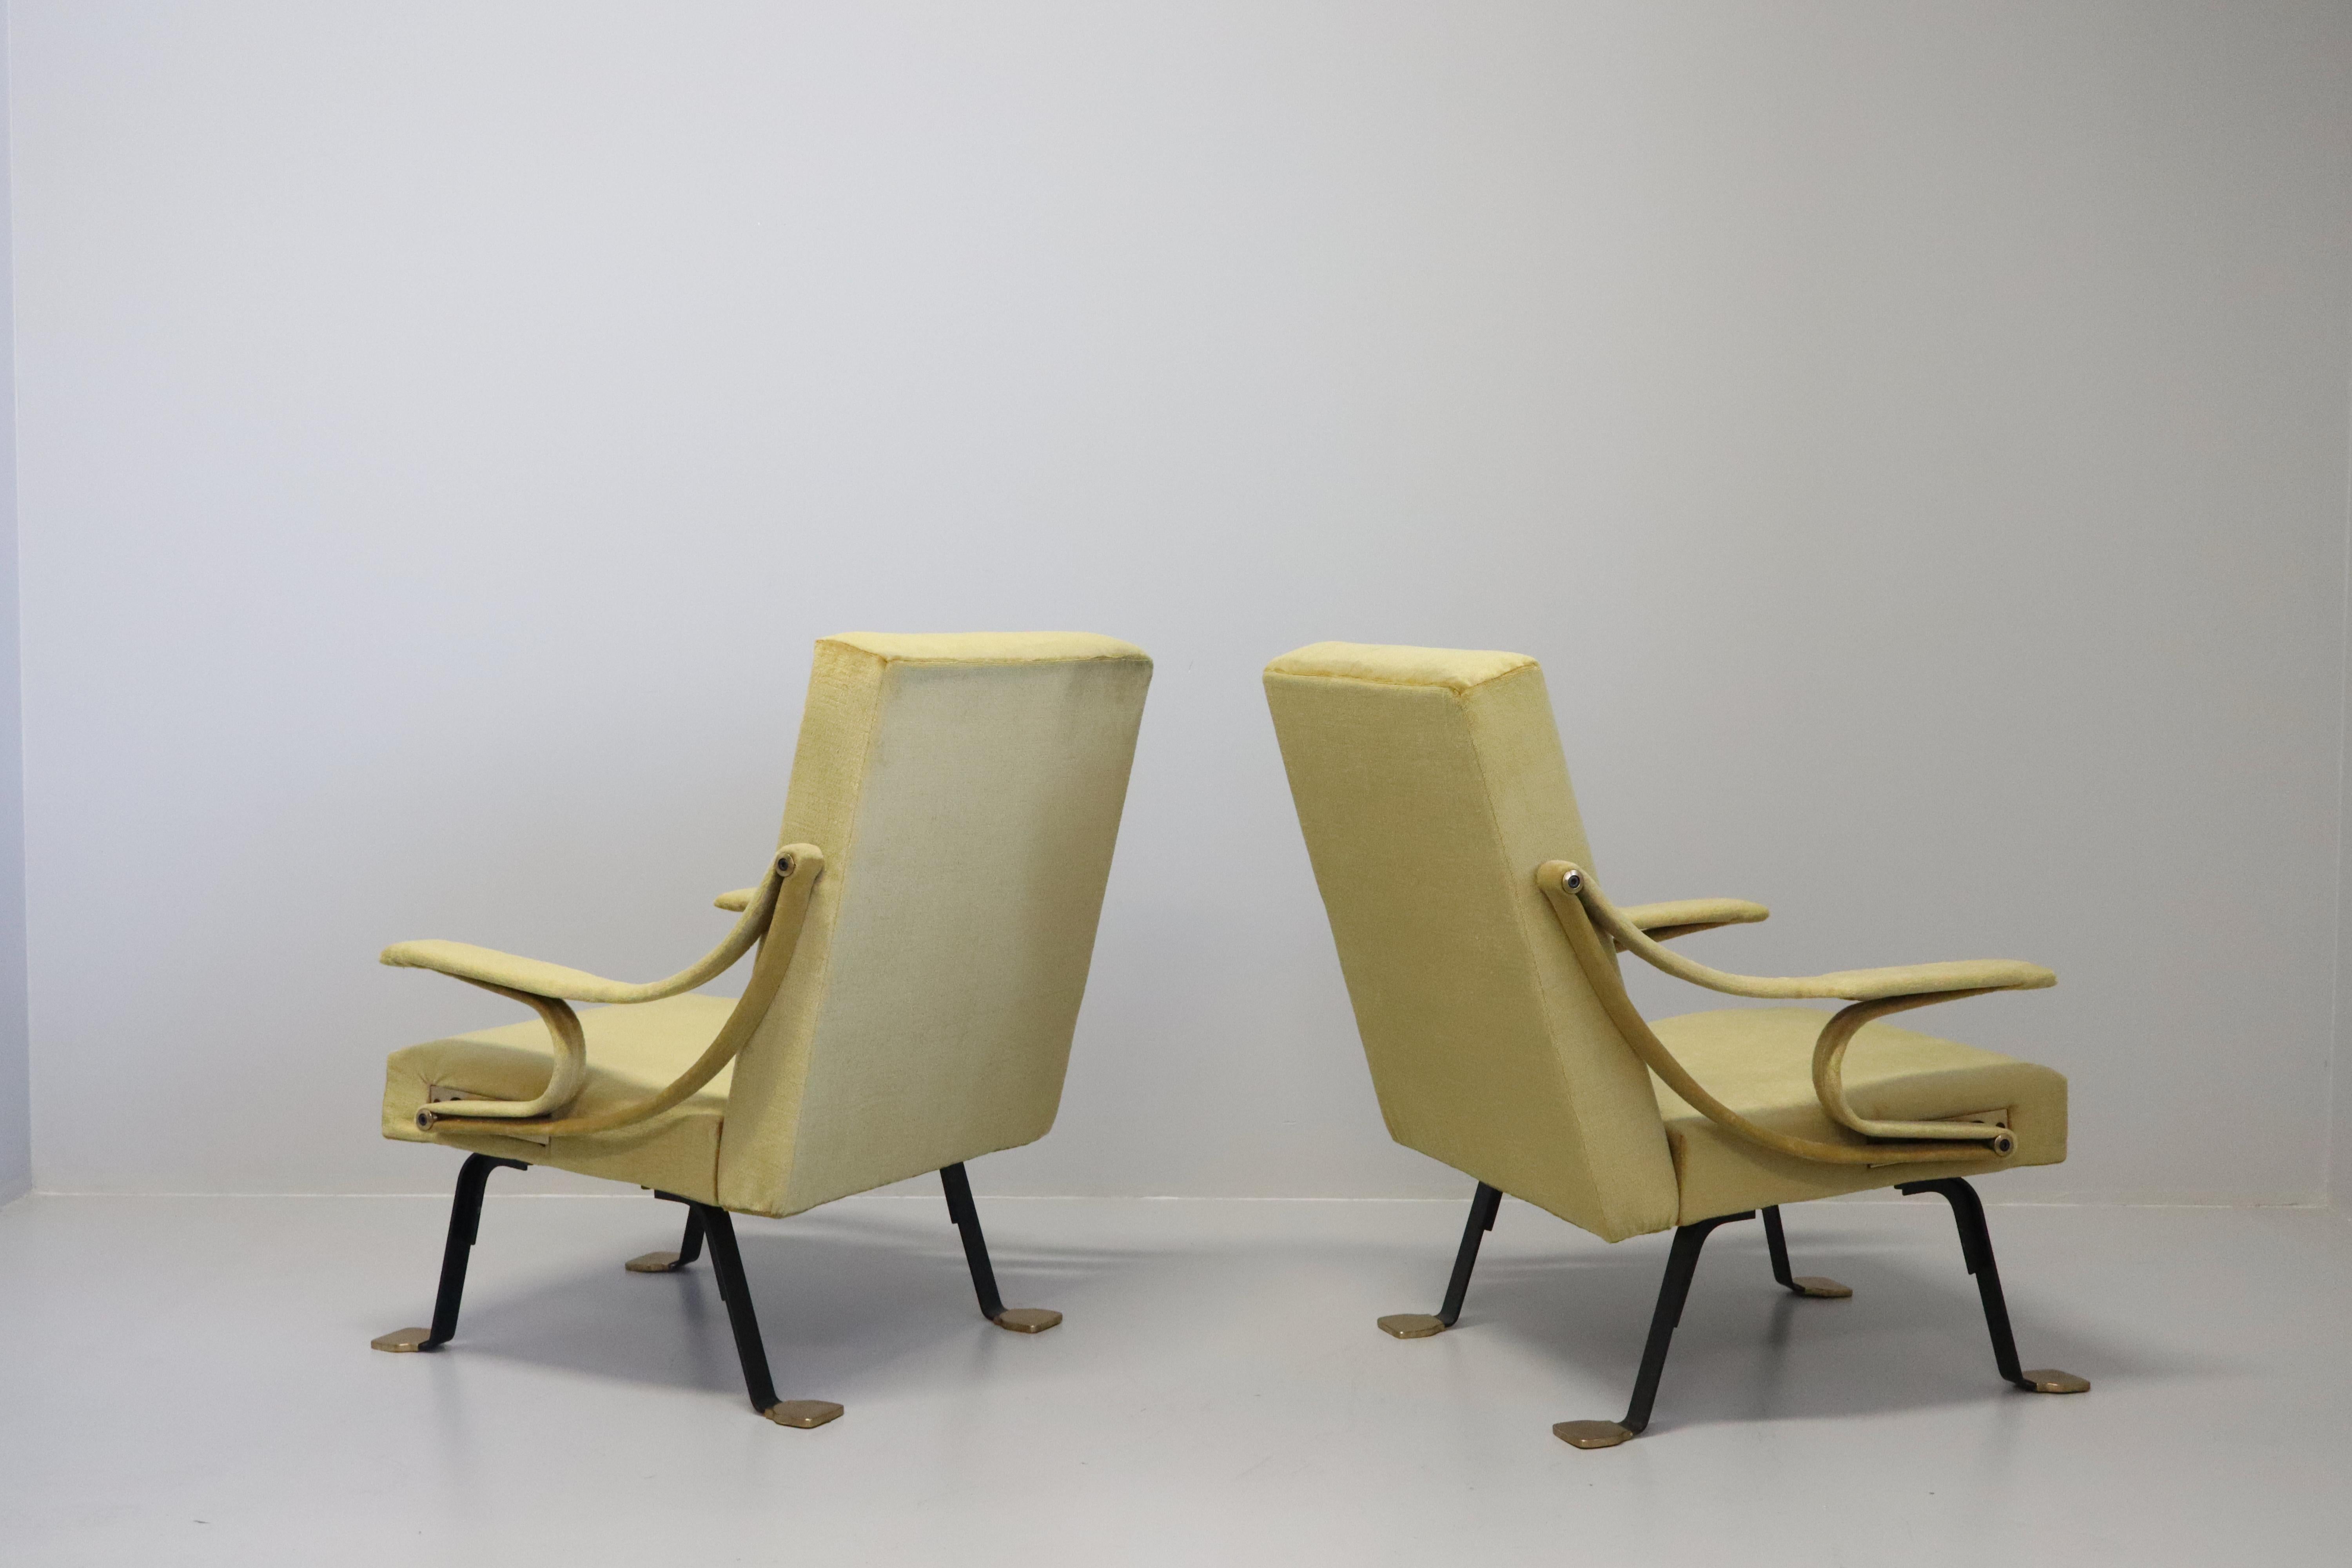 Ein sehr seltenes Paar originaler Digamma-Liegestühle aus den 1950er Jahren, entworfen von Ignazio Gardella im Jahr 1957 und hergestellt von Gavina, Bologna, Italien.   Die Stühle haben ihre Originalriemen behalten, und der Rahmen und die Füße sind